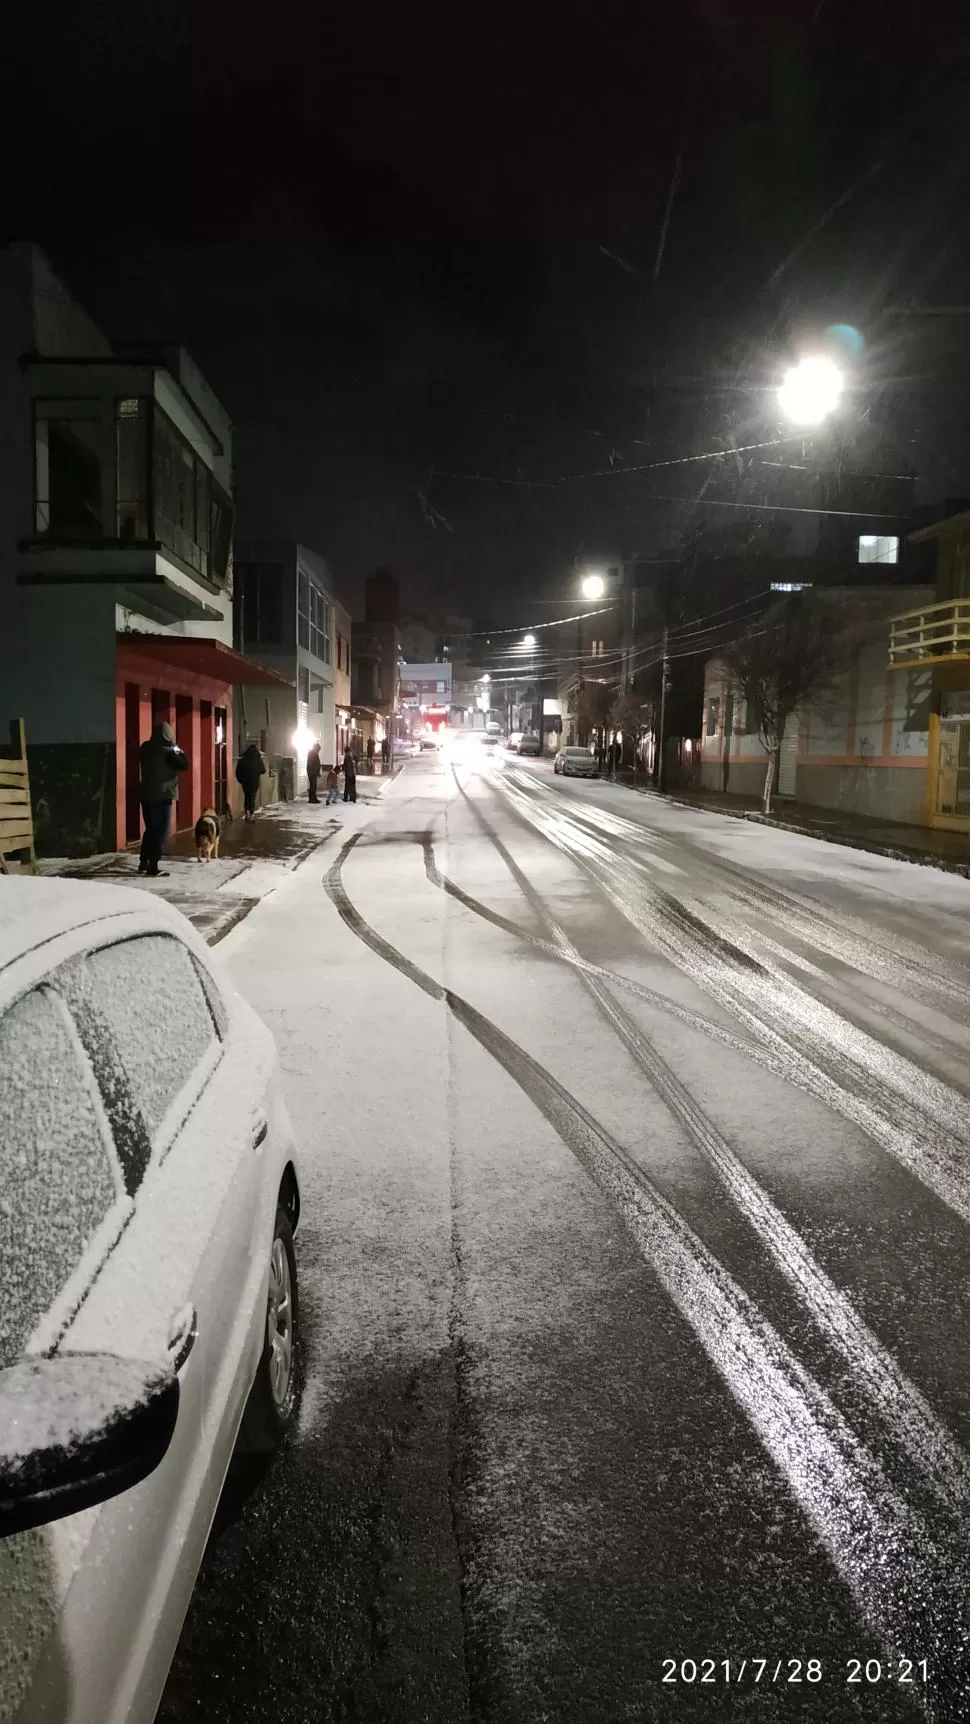 SORPRESA. La imagen de las calles cubiertas de nieve en Vacaria, Rio Grande do Sul, dejó a los brasileños ante un escenario que nunca habían vistto, y para el que no estaban preparados. fotos reuters